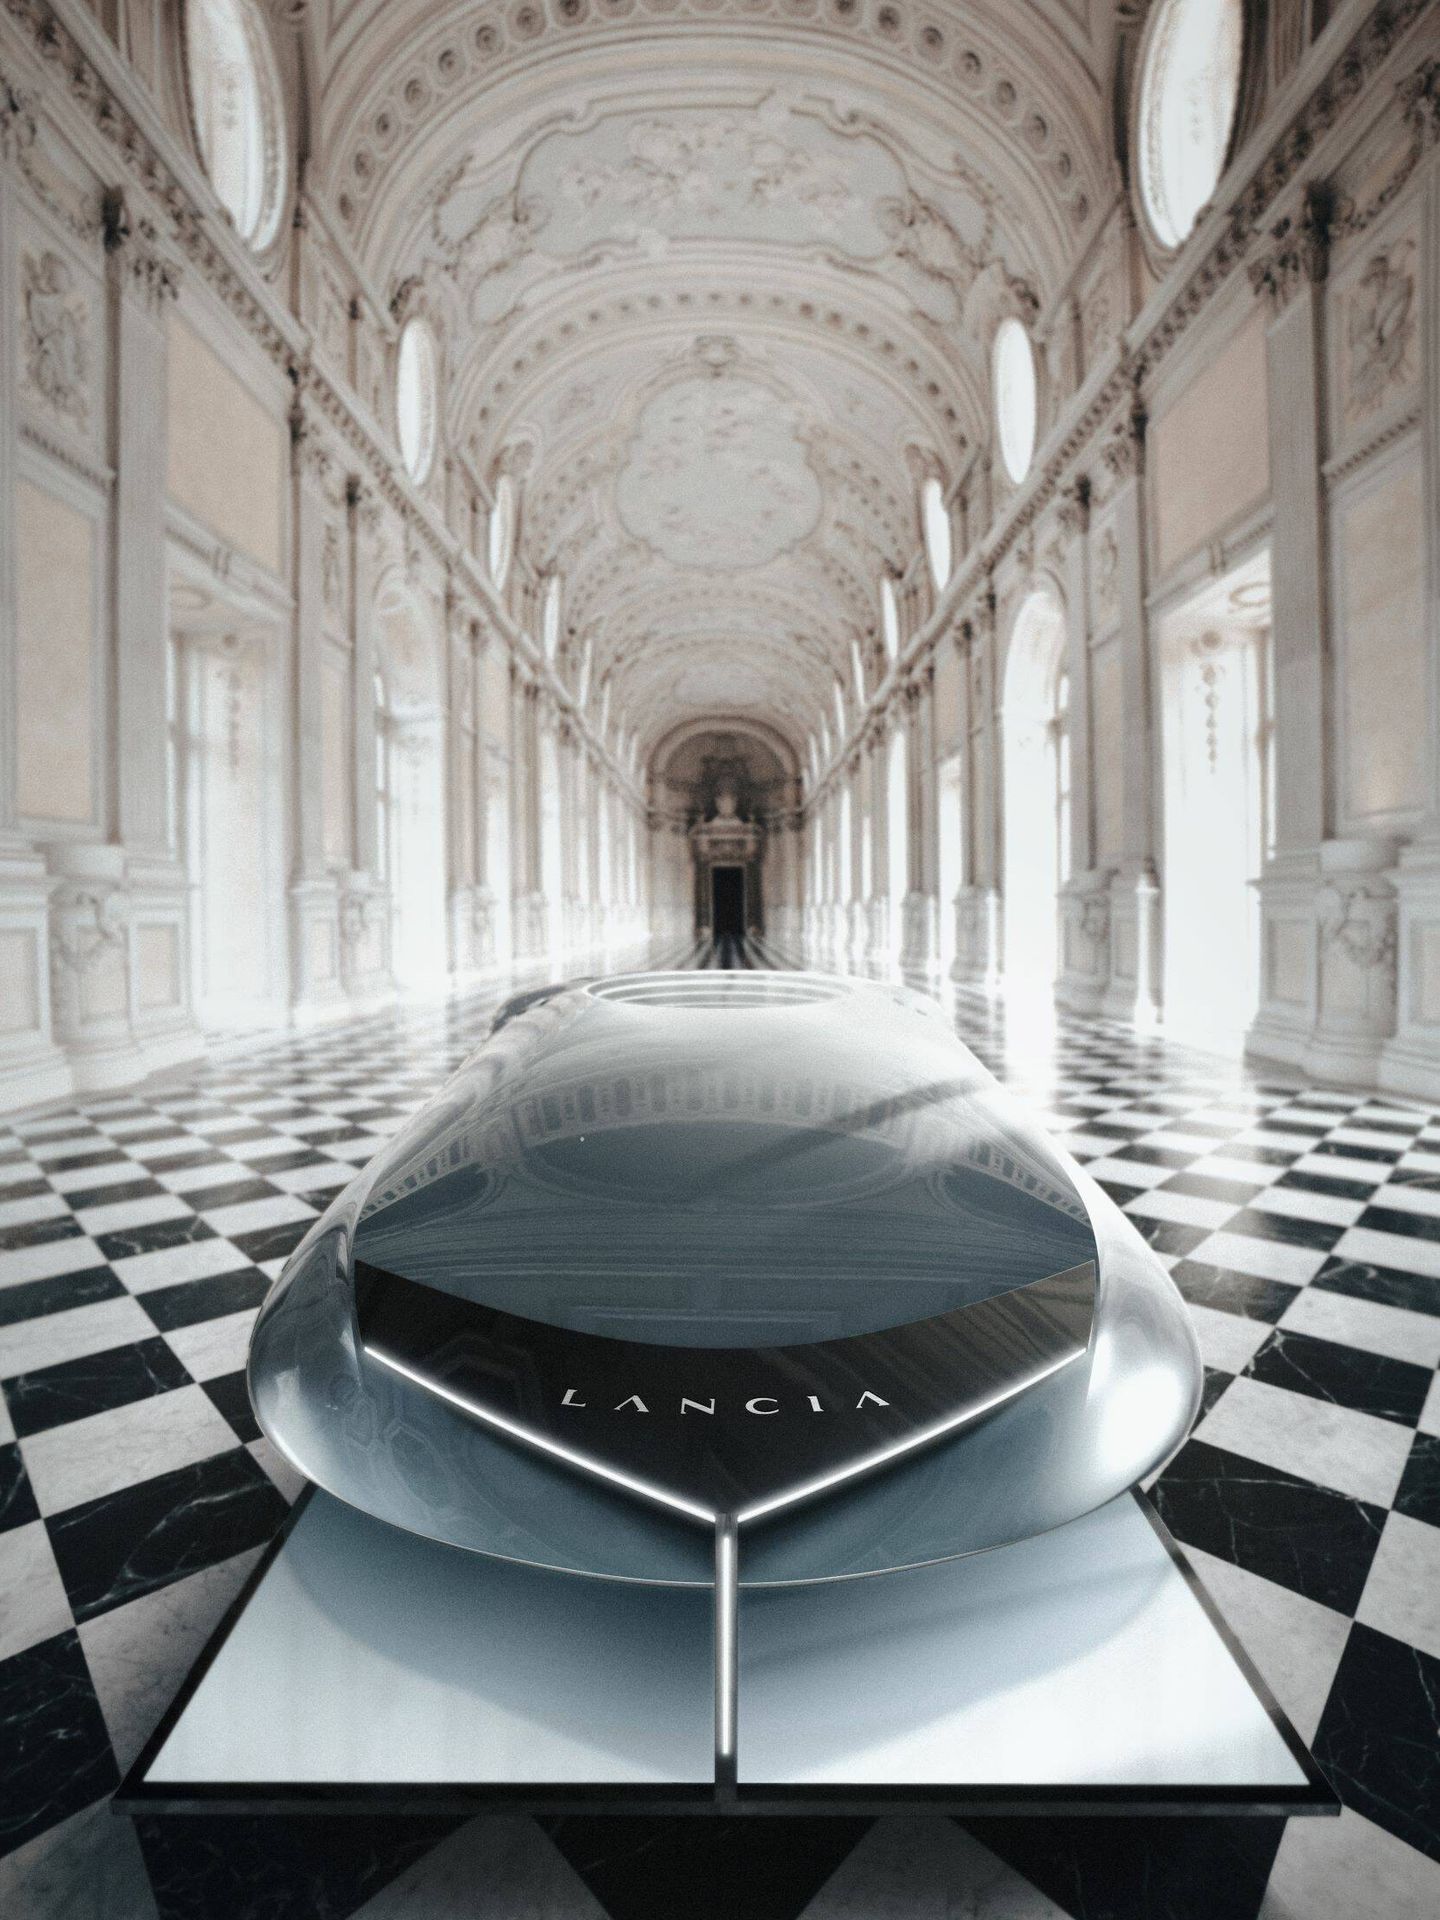 La marca italiana desveló su futurista Pu+Ra Zero en el salón principal del palacio de Venaria Reale.